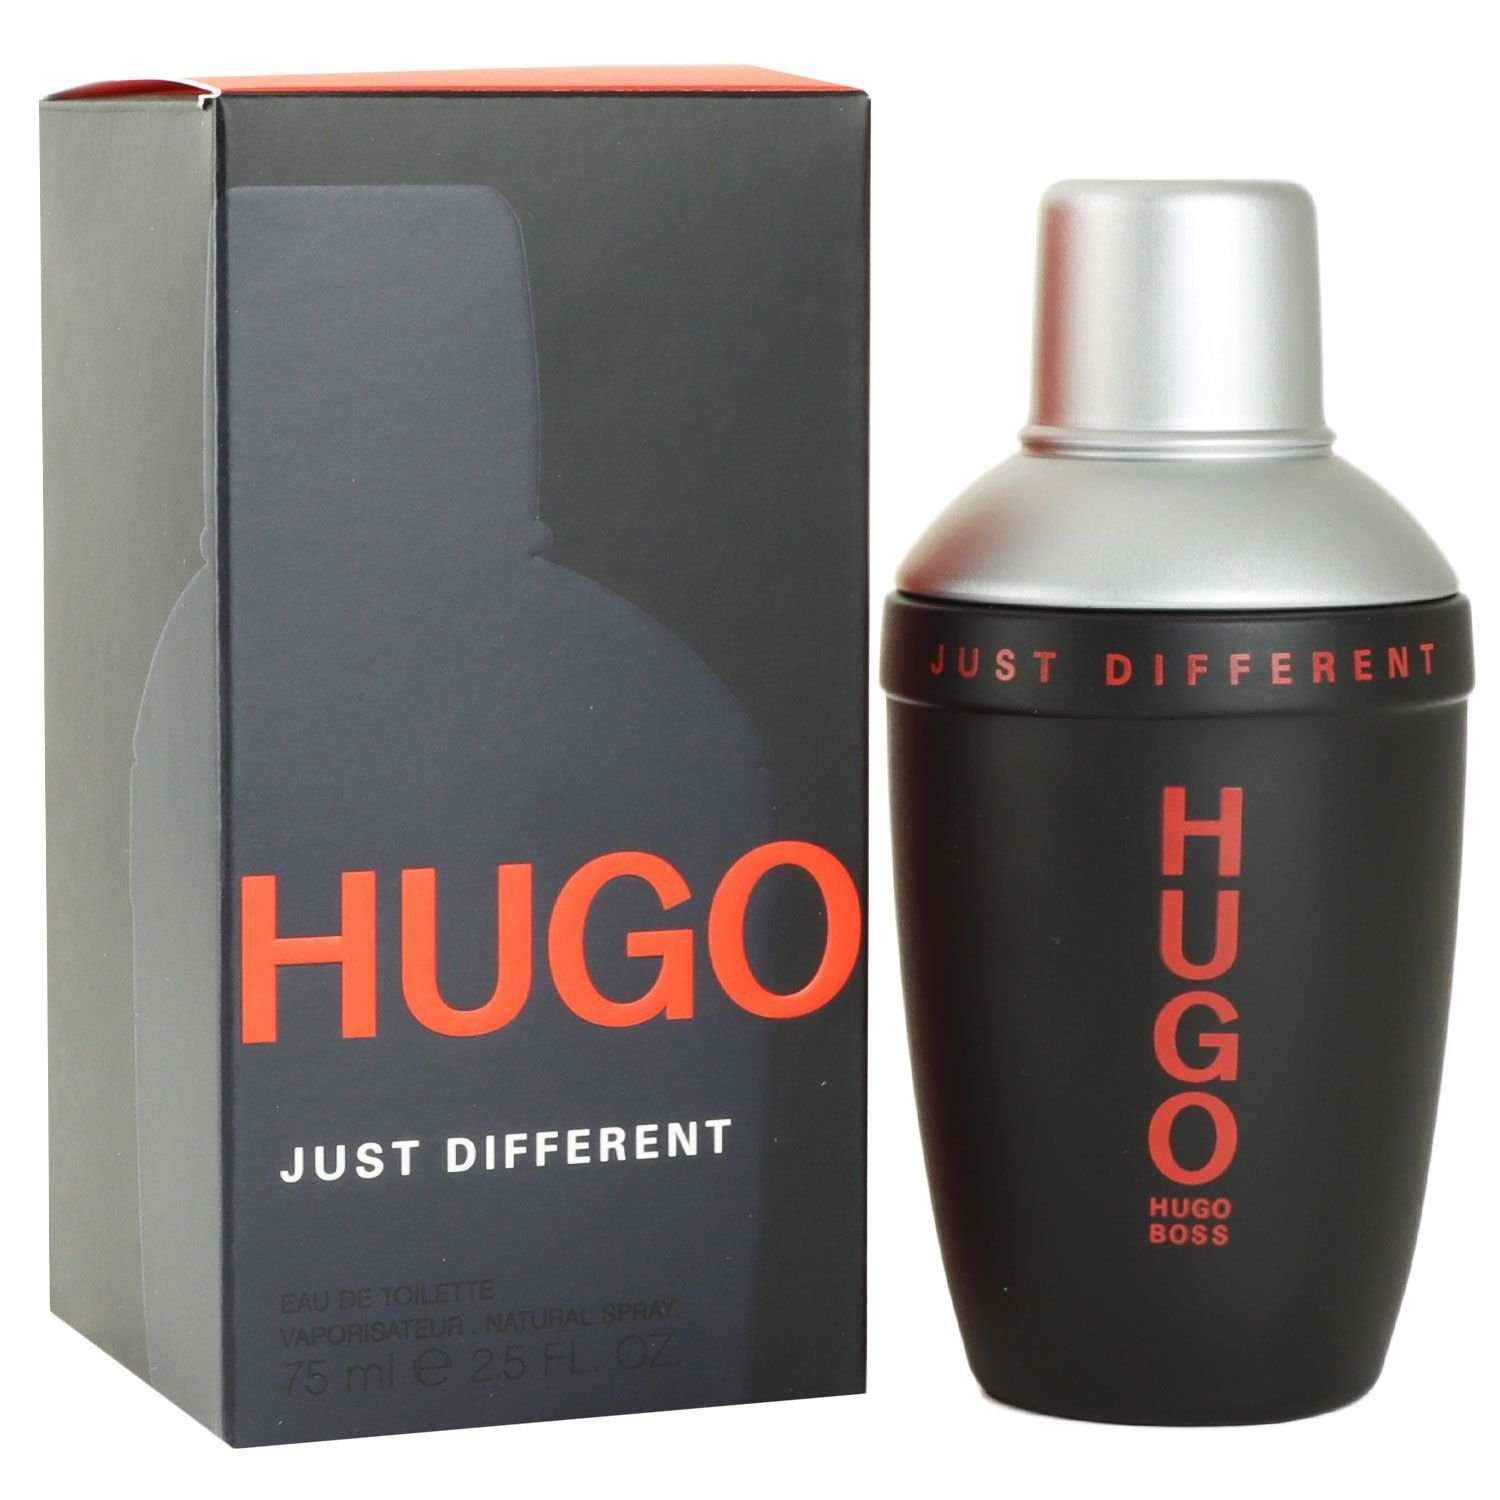 Hugo Different de Just ml Eau 75 HUGO Toilette